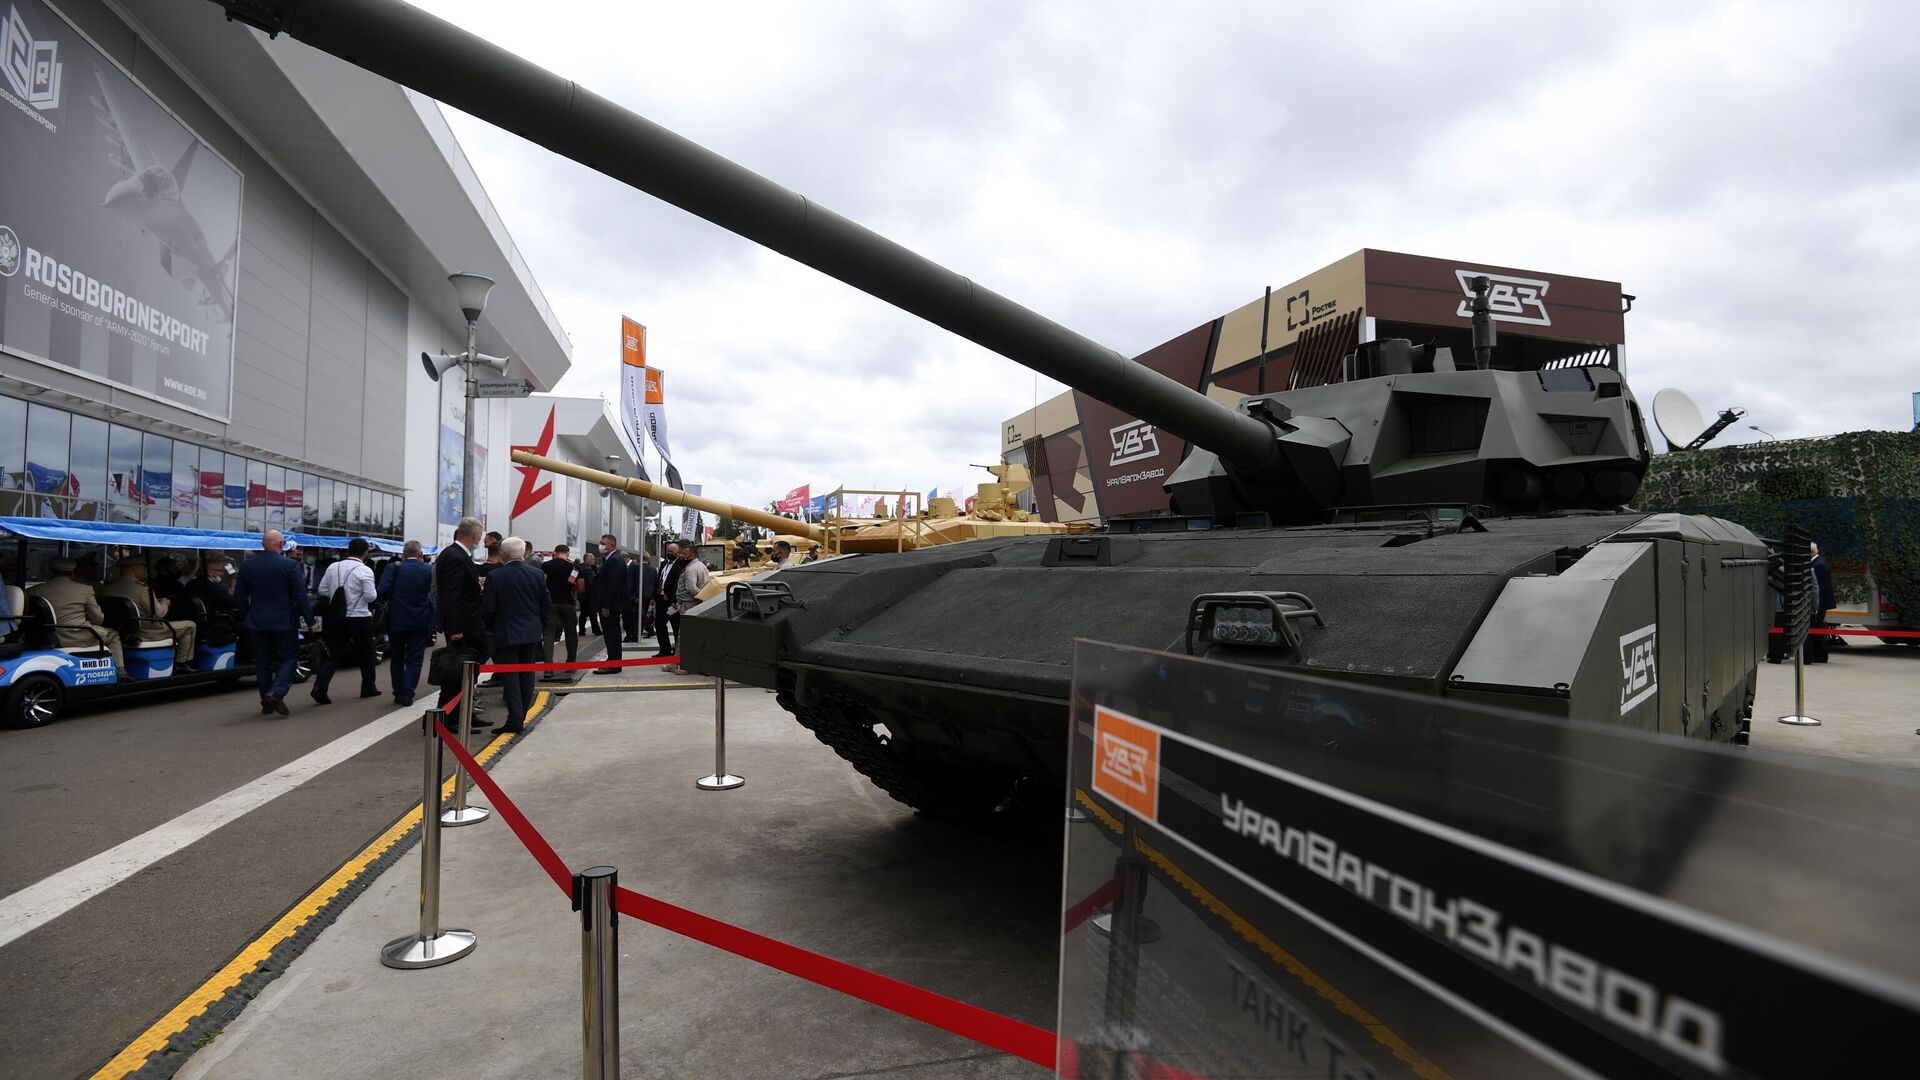 Танк Т-14 Армата на выставке вооружений Международного военно-технического форума Армия-2020 - РИА Новости, 1920, 26.08.2020